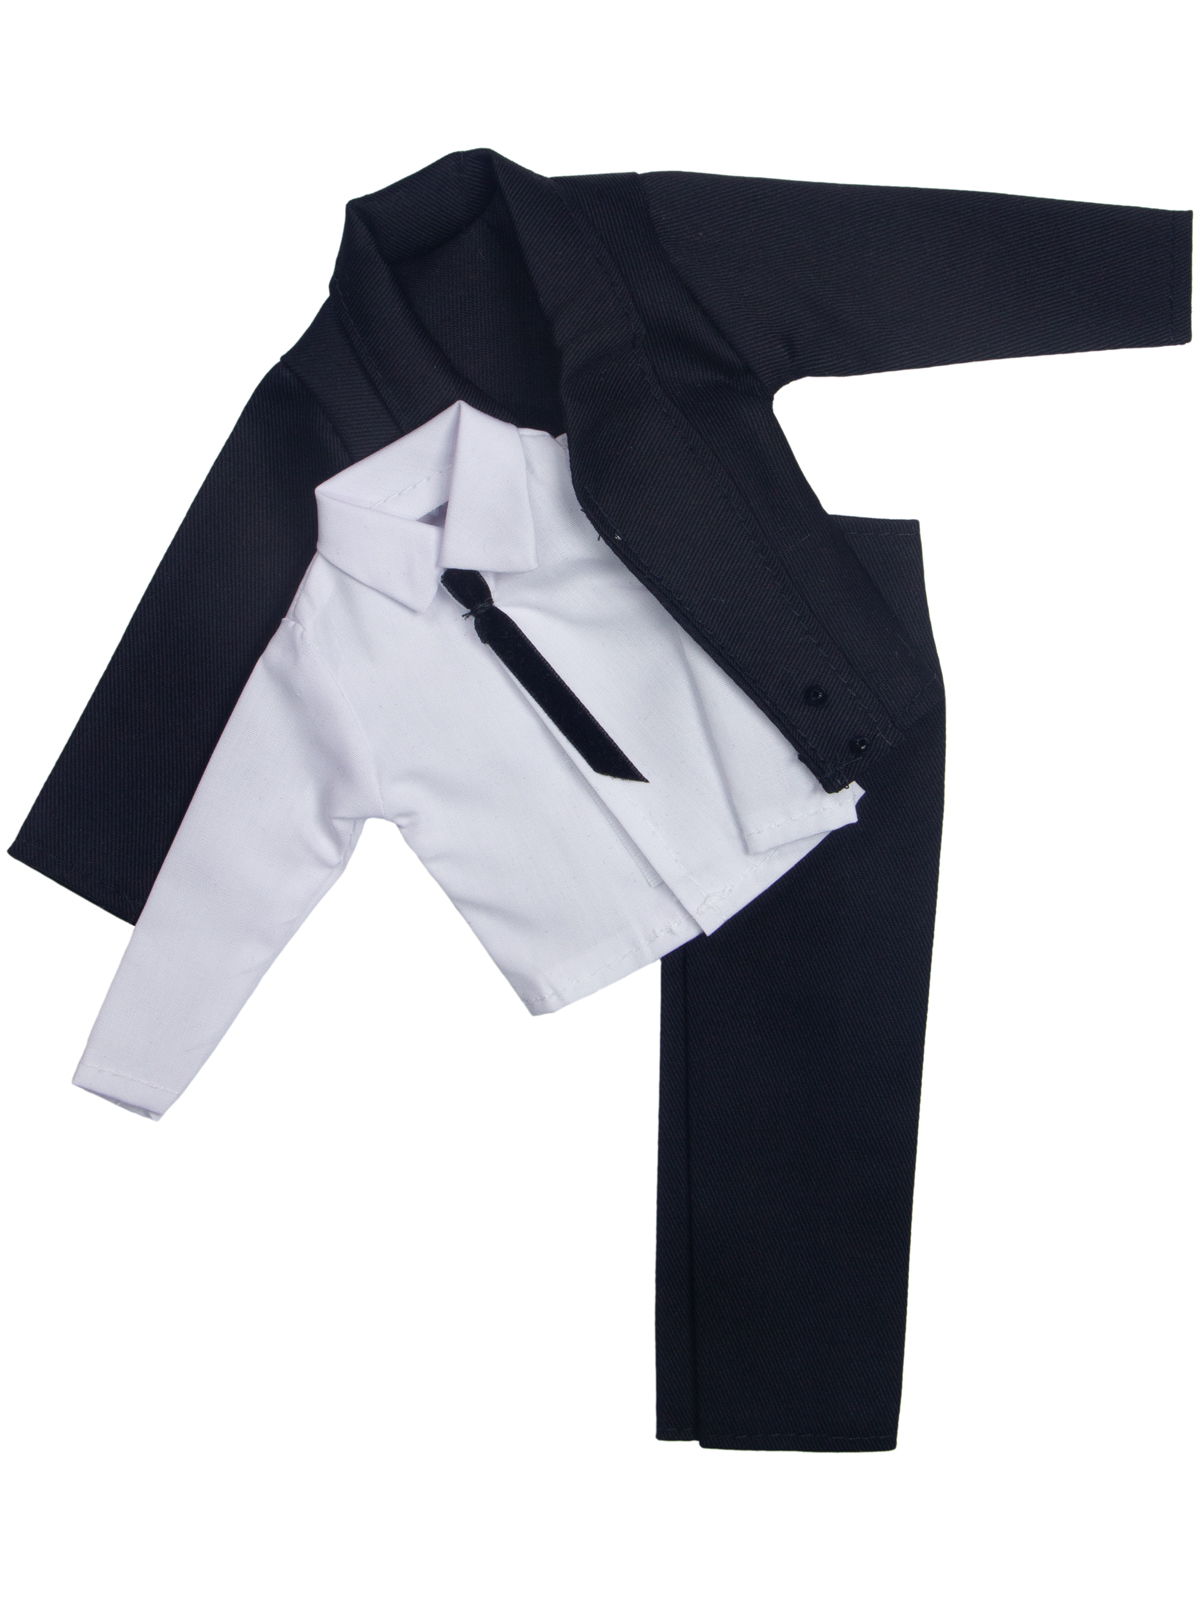 фото Одежда для кукол Модница Костюм мужской для кукол 29-30 см черный